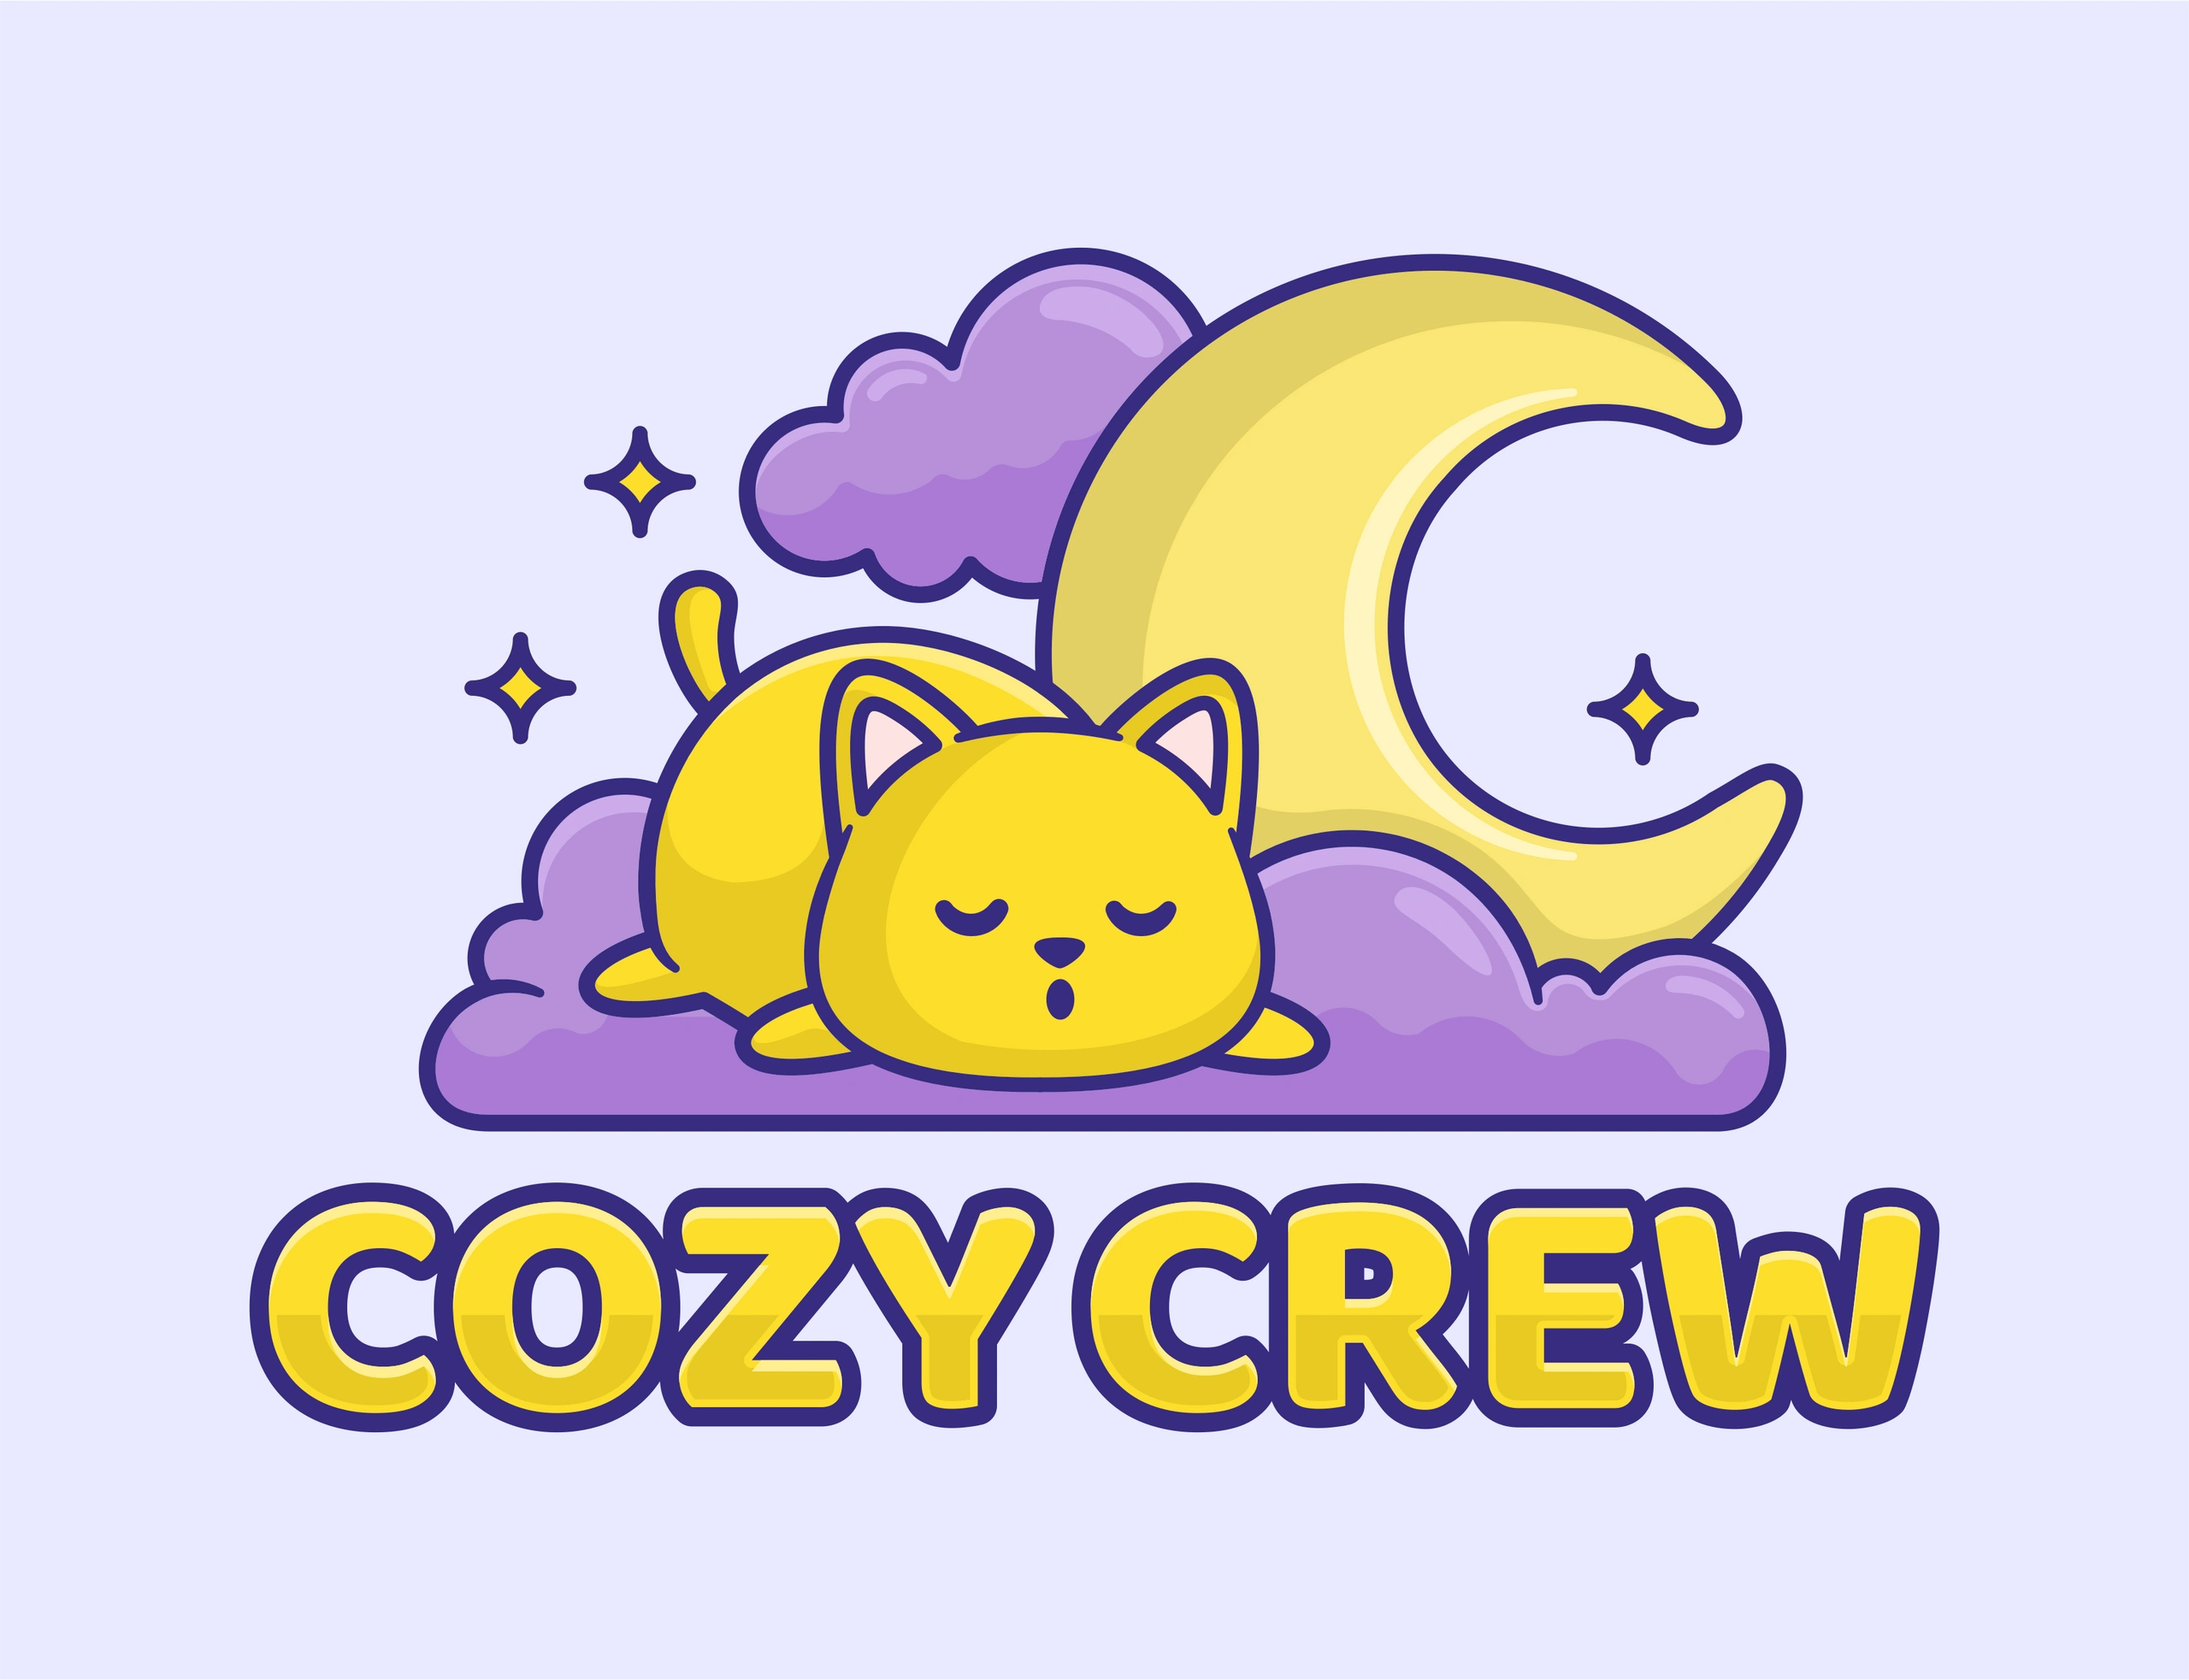 The Cozy Crew